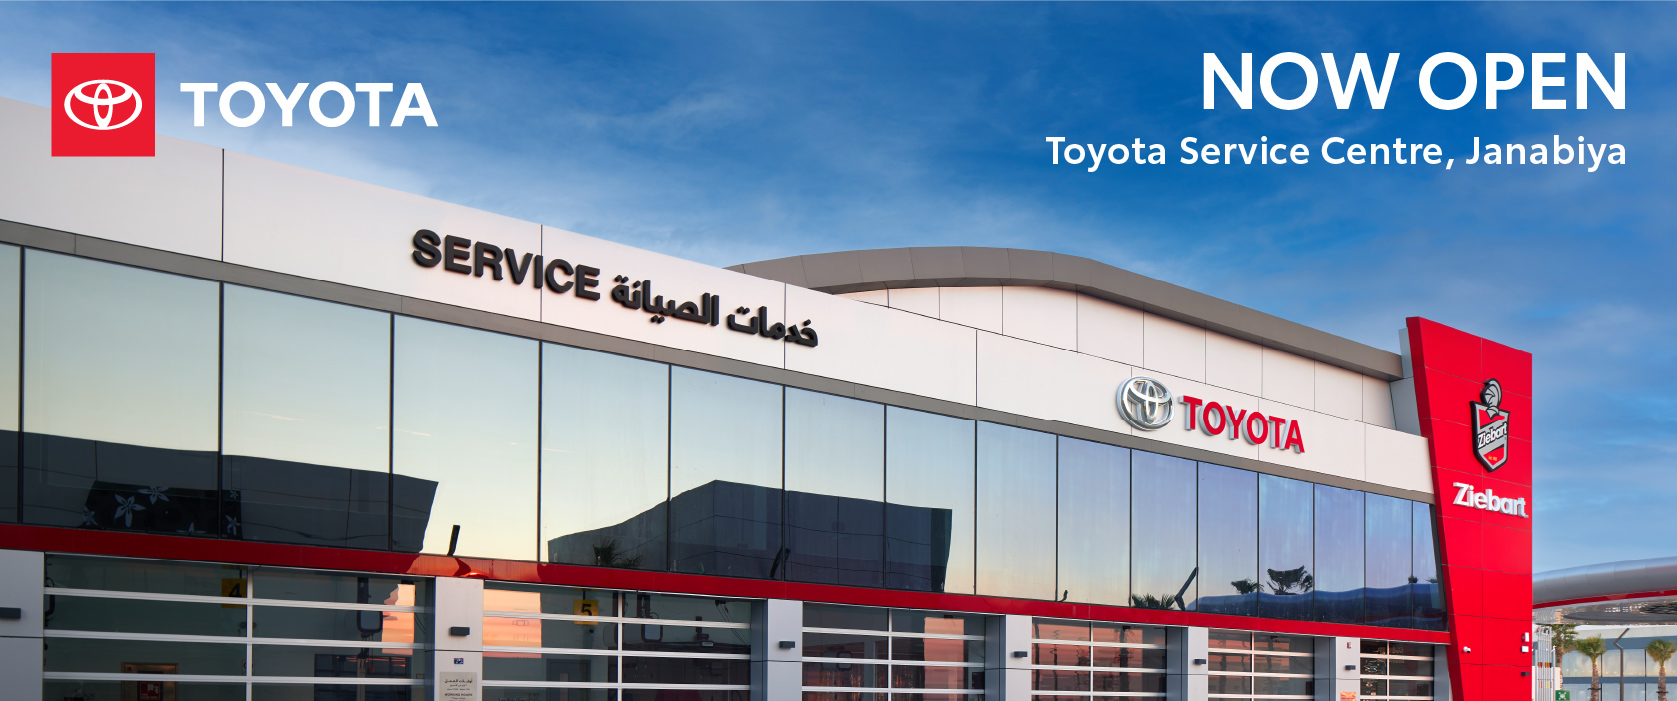 Toyota Service Center- Kanoo Station,  Janabiyah